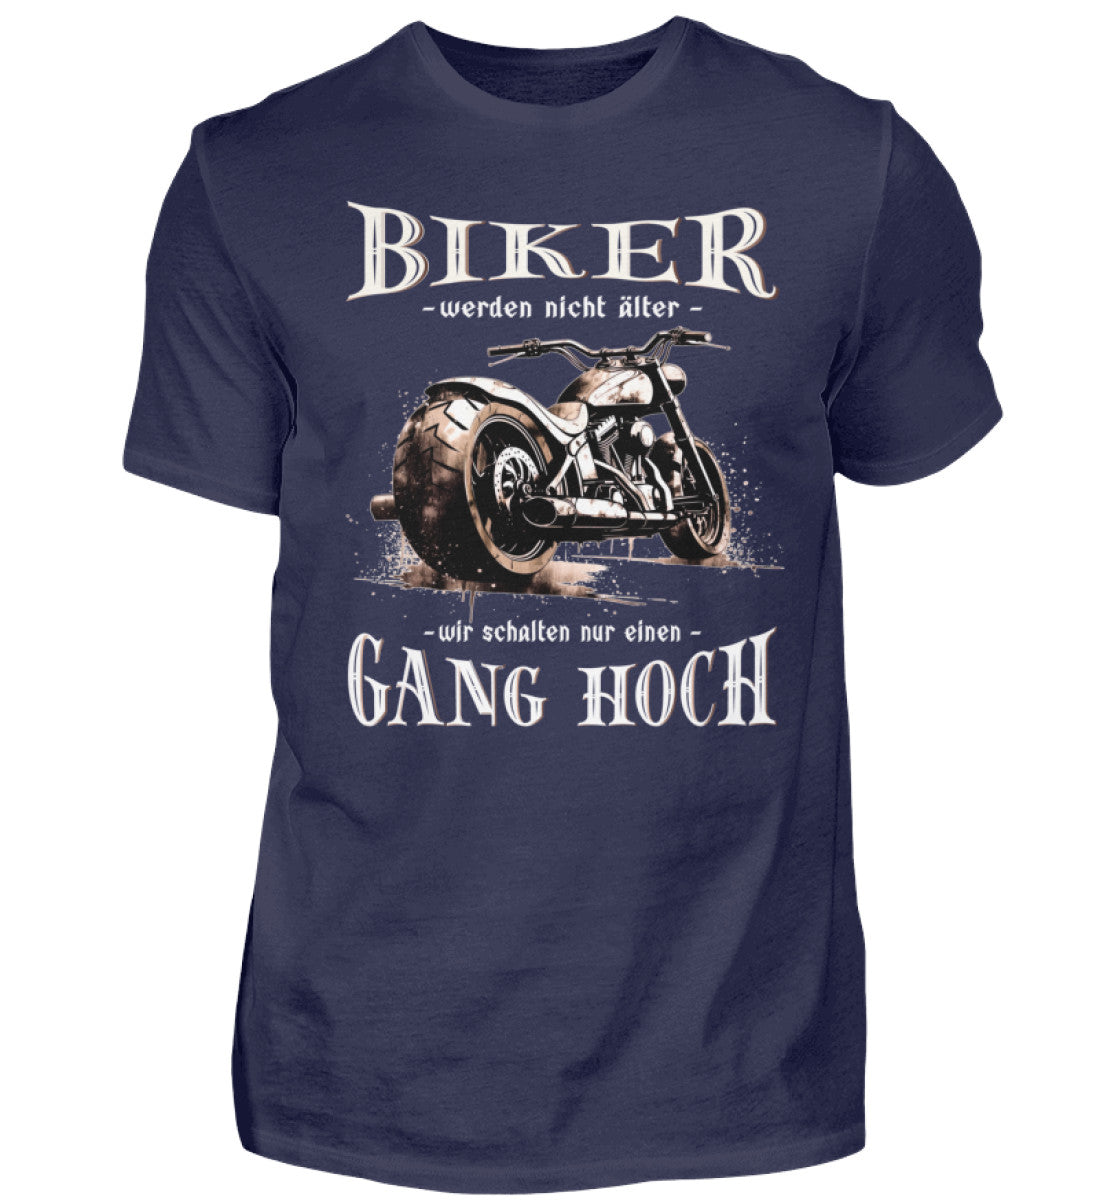 Ein Biker T-Shirt für Motorradfahrer von Wingbikers mit dem Aufdruck, Biker werden nicht älter - Wir schalten nur einen Gang hoch! - in navy blau.